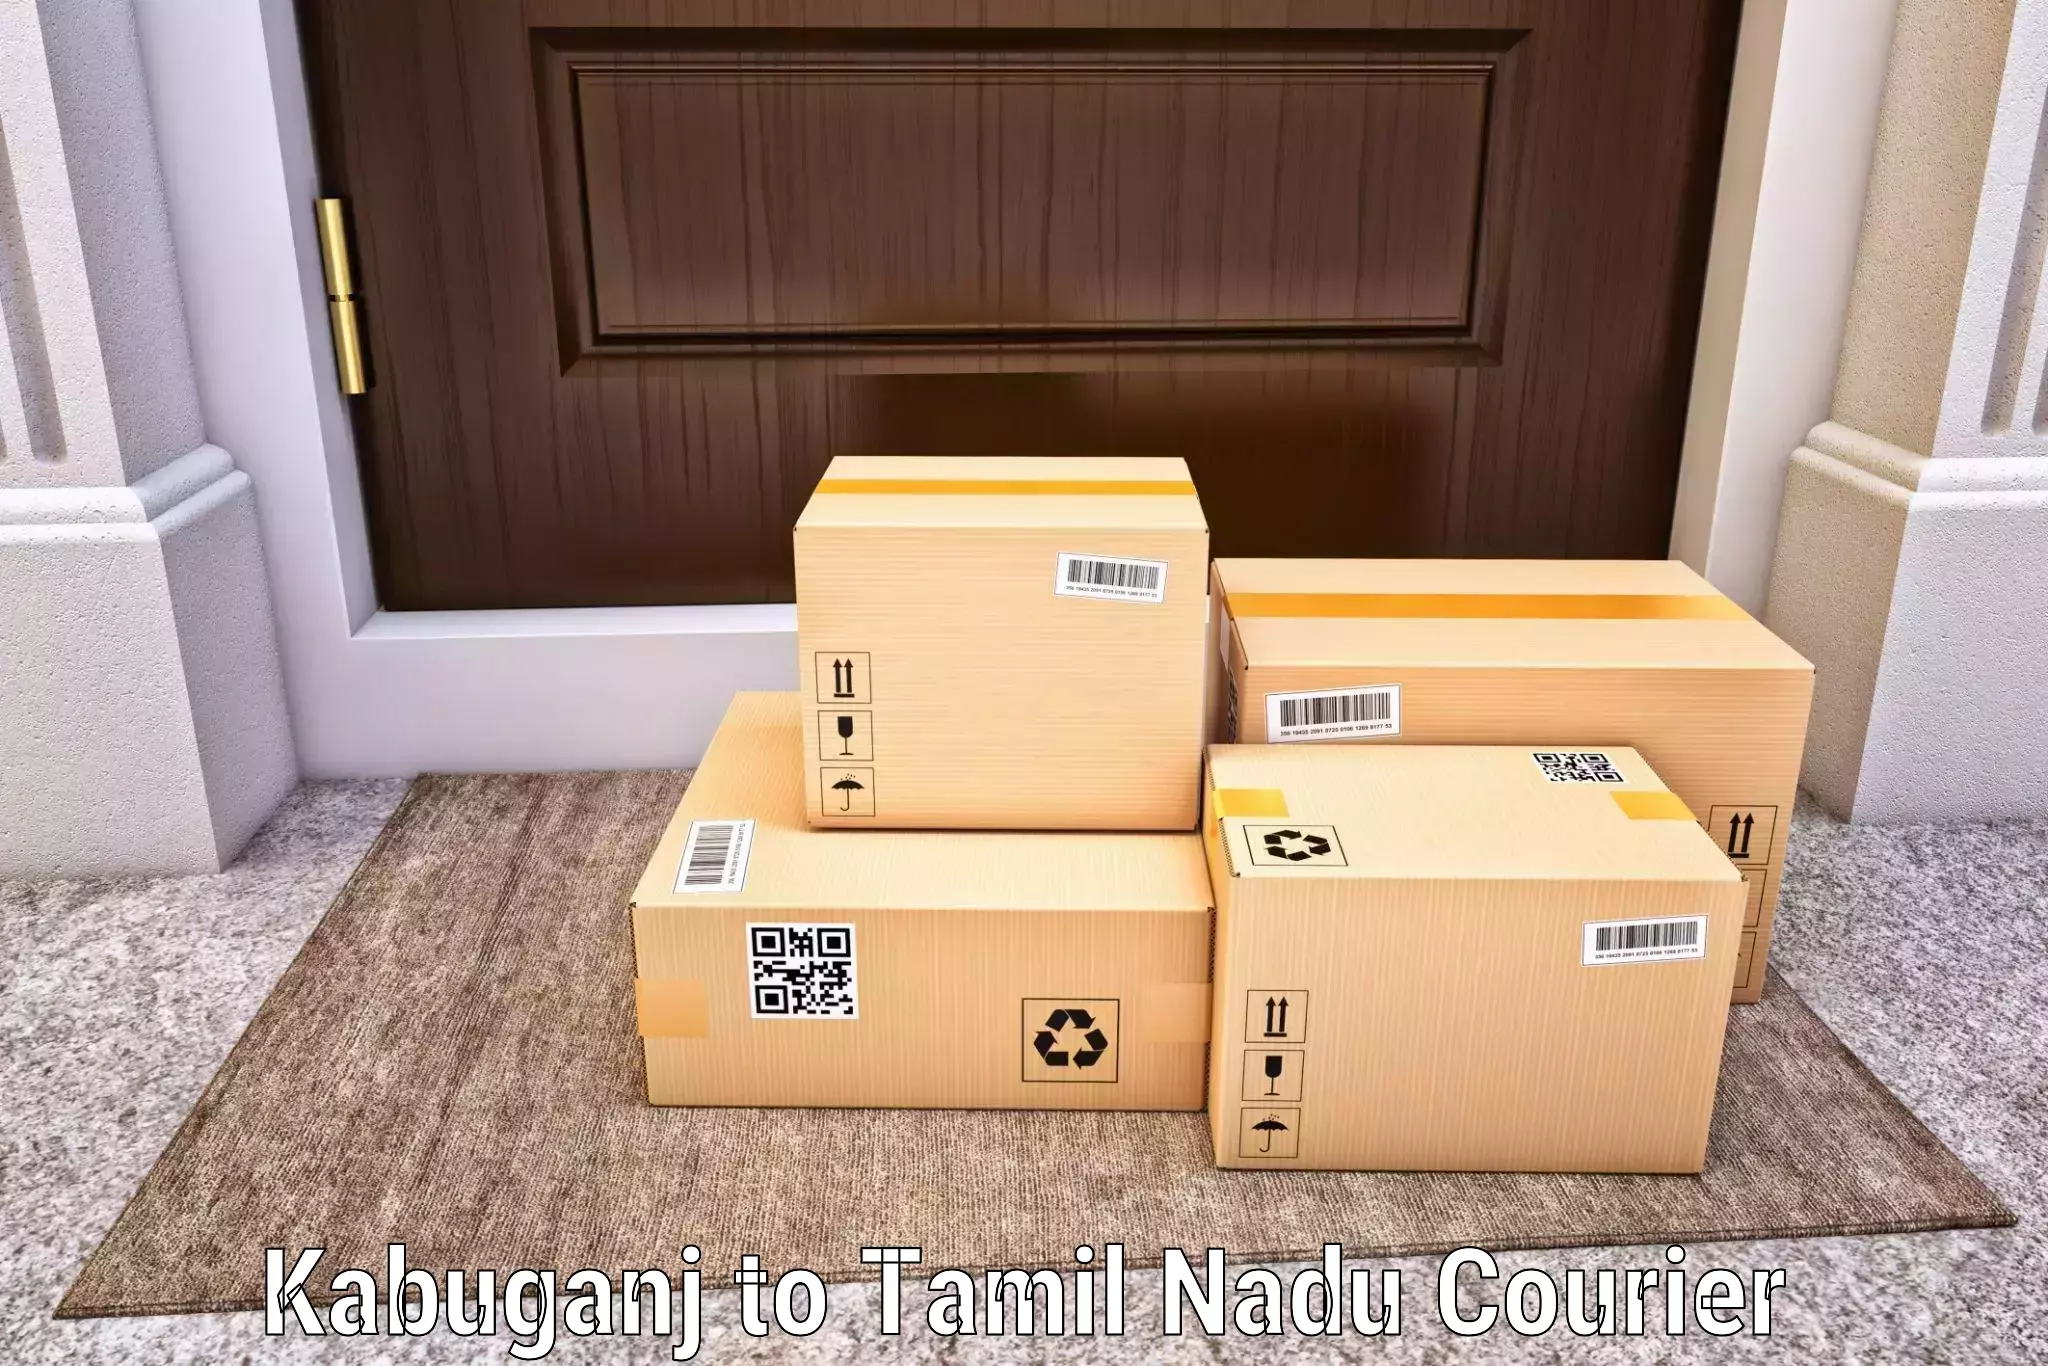 Custom courier packages Kabuganj to Alagappa University Karaikudi